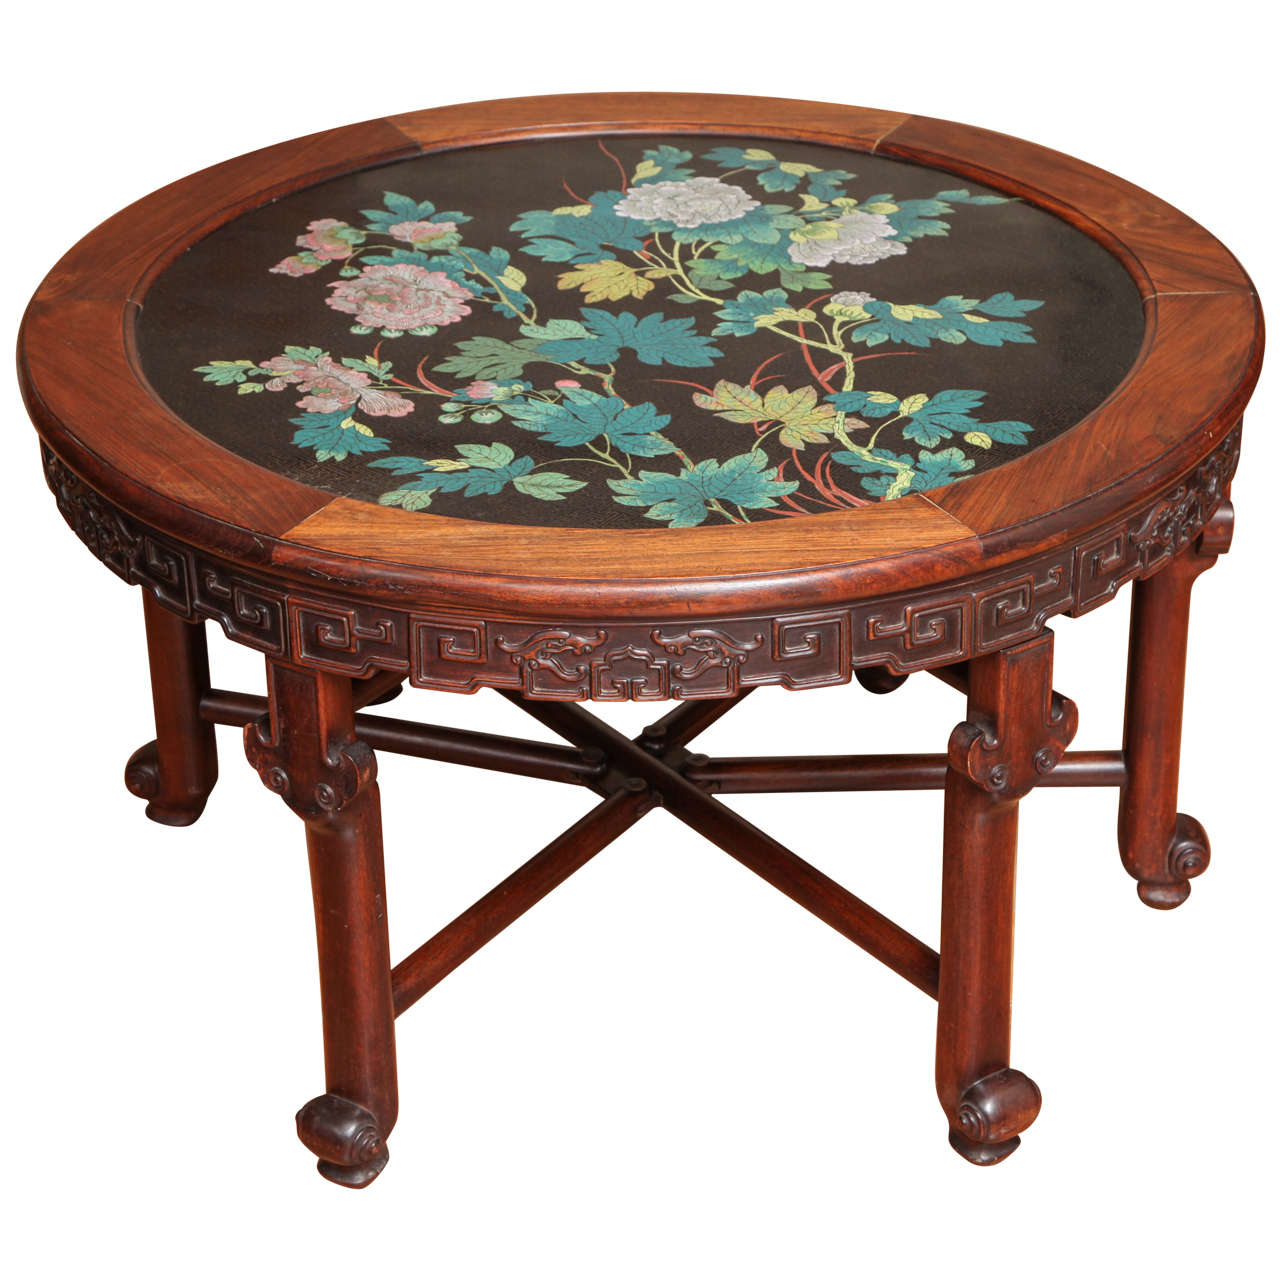 Ancienne table circulaire chinoise sculptée en bois de rose et émail à fleurs cloisonné